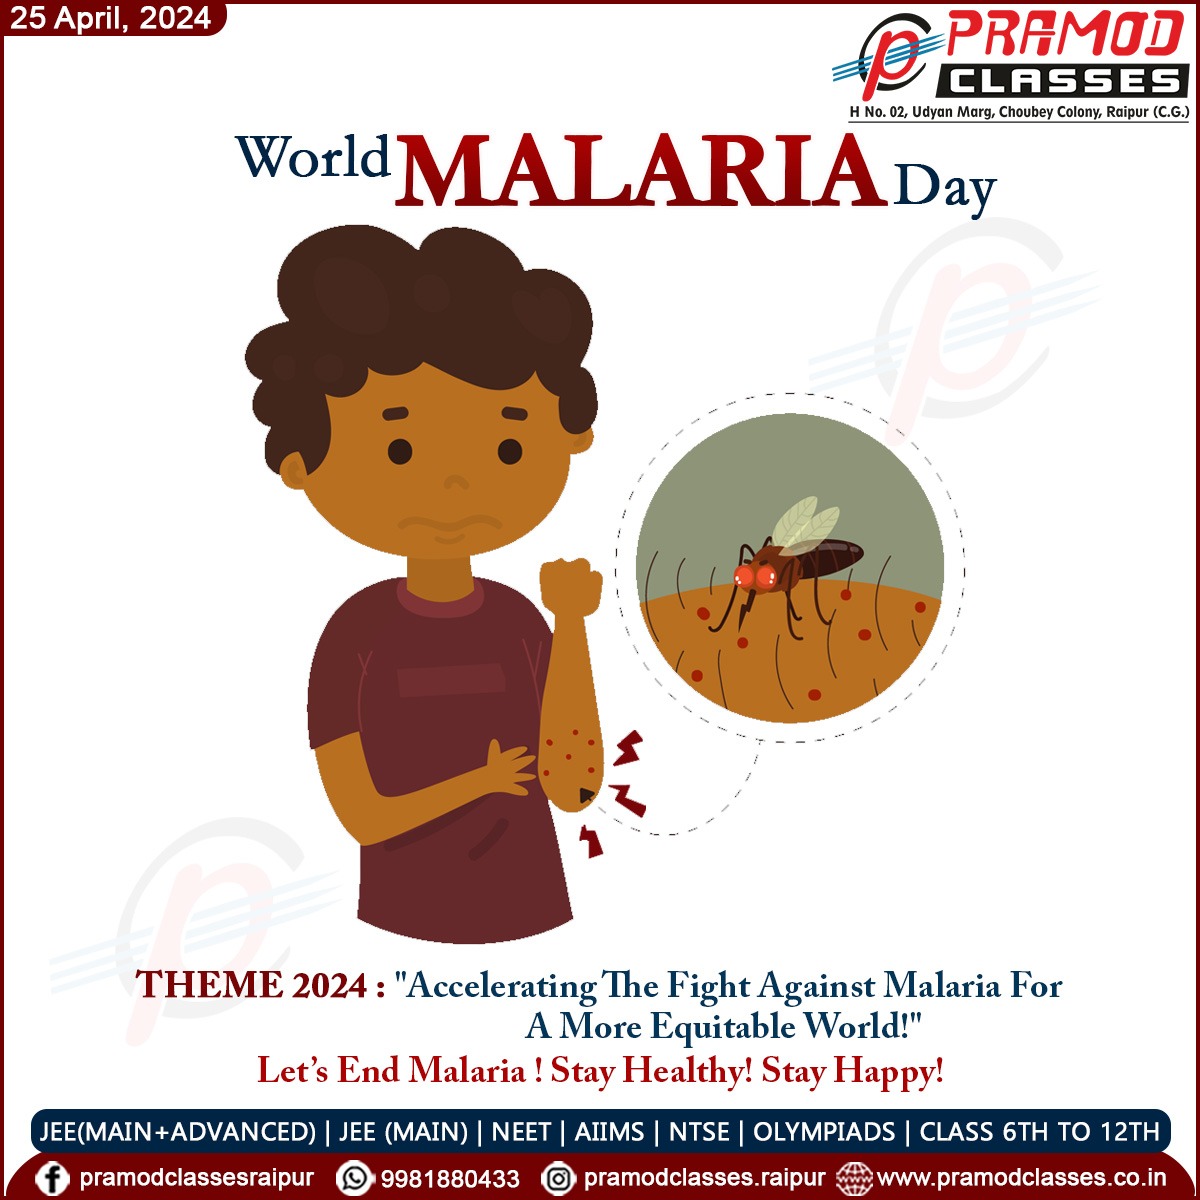 #Malaria #MalariaDay #MalariaDay2024 #WorldMalariaDay #WorldMalariaDay2024